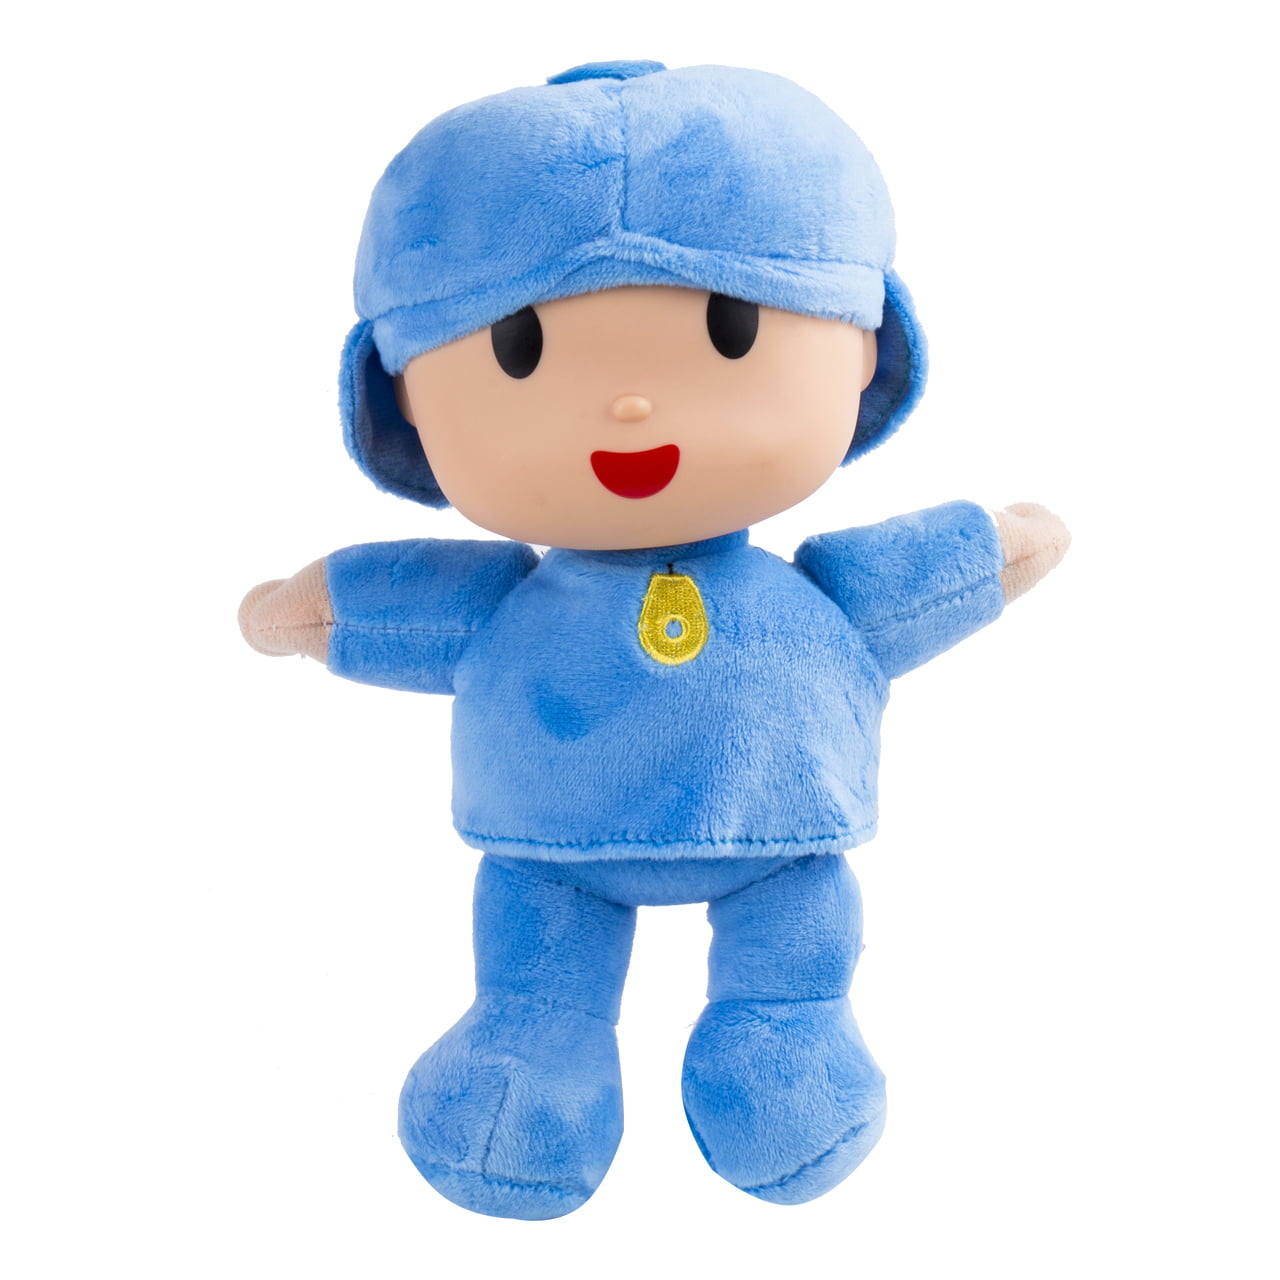 4pcs Doll Pocoyo Pato One Elly Stuffed Plush Bandai  Loula Figure Kids Toy Gift